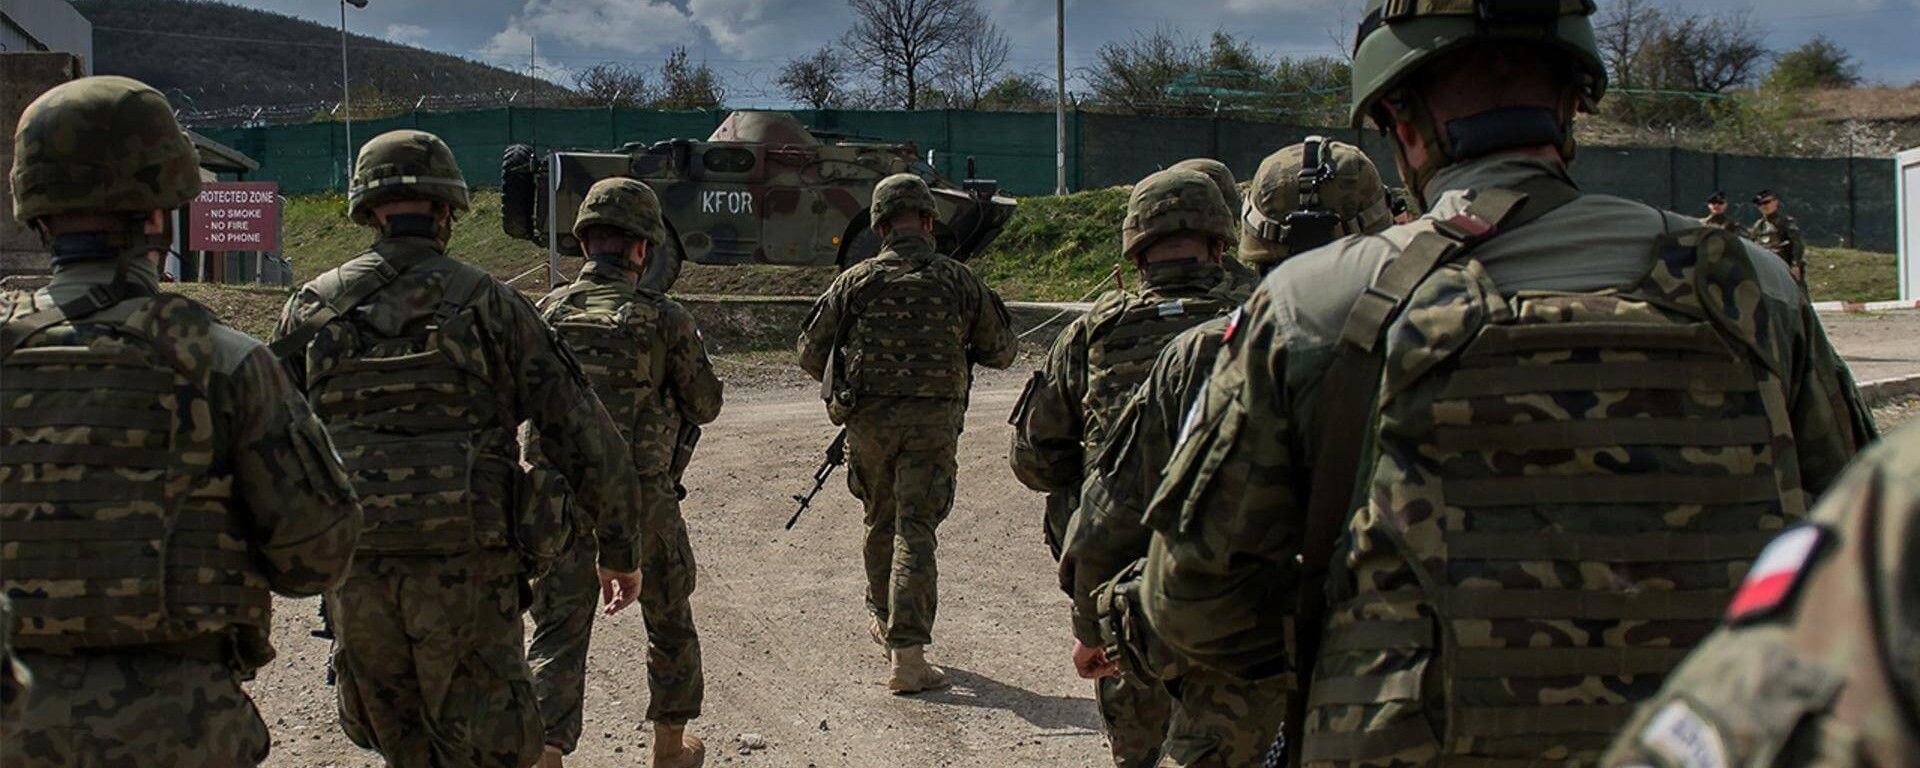 wojsko polskie siły zbrojne Kosowo